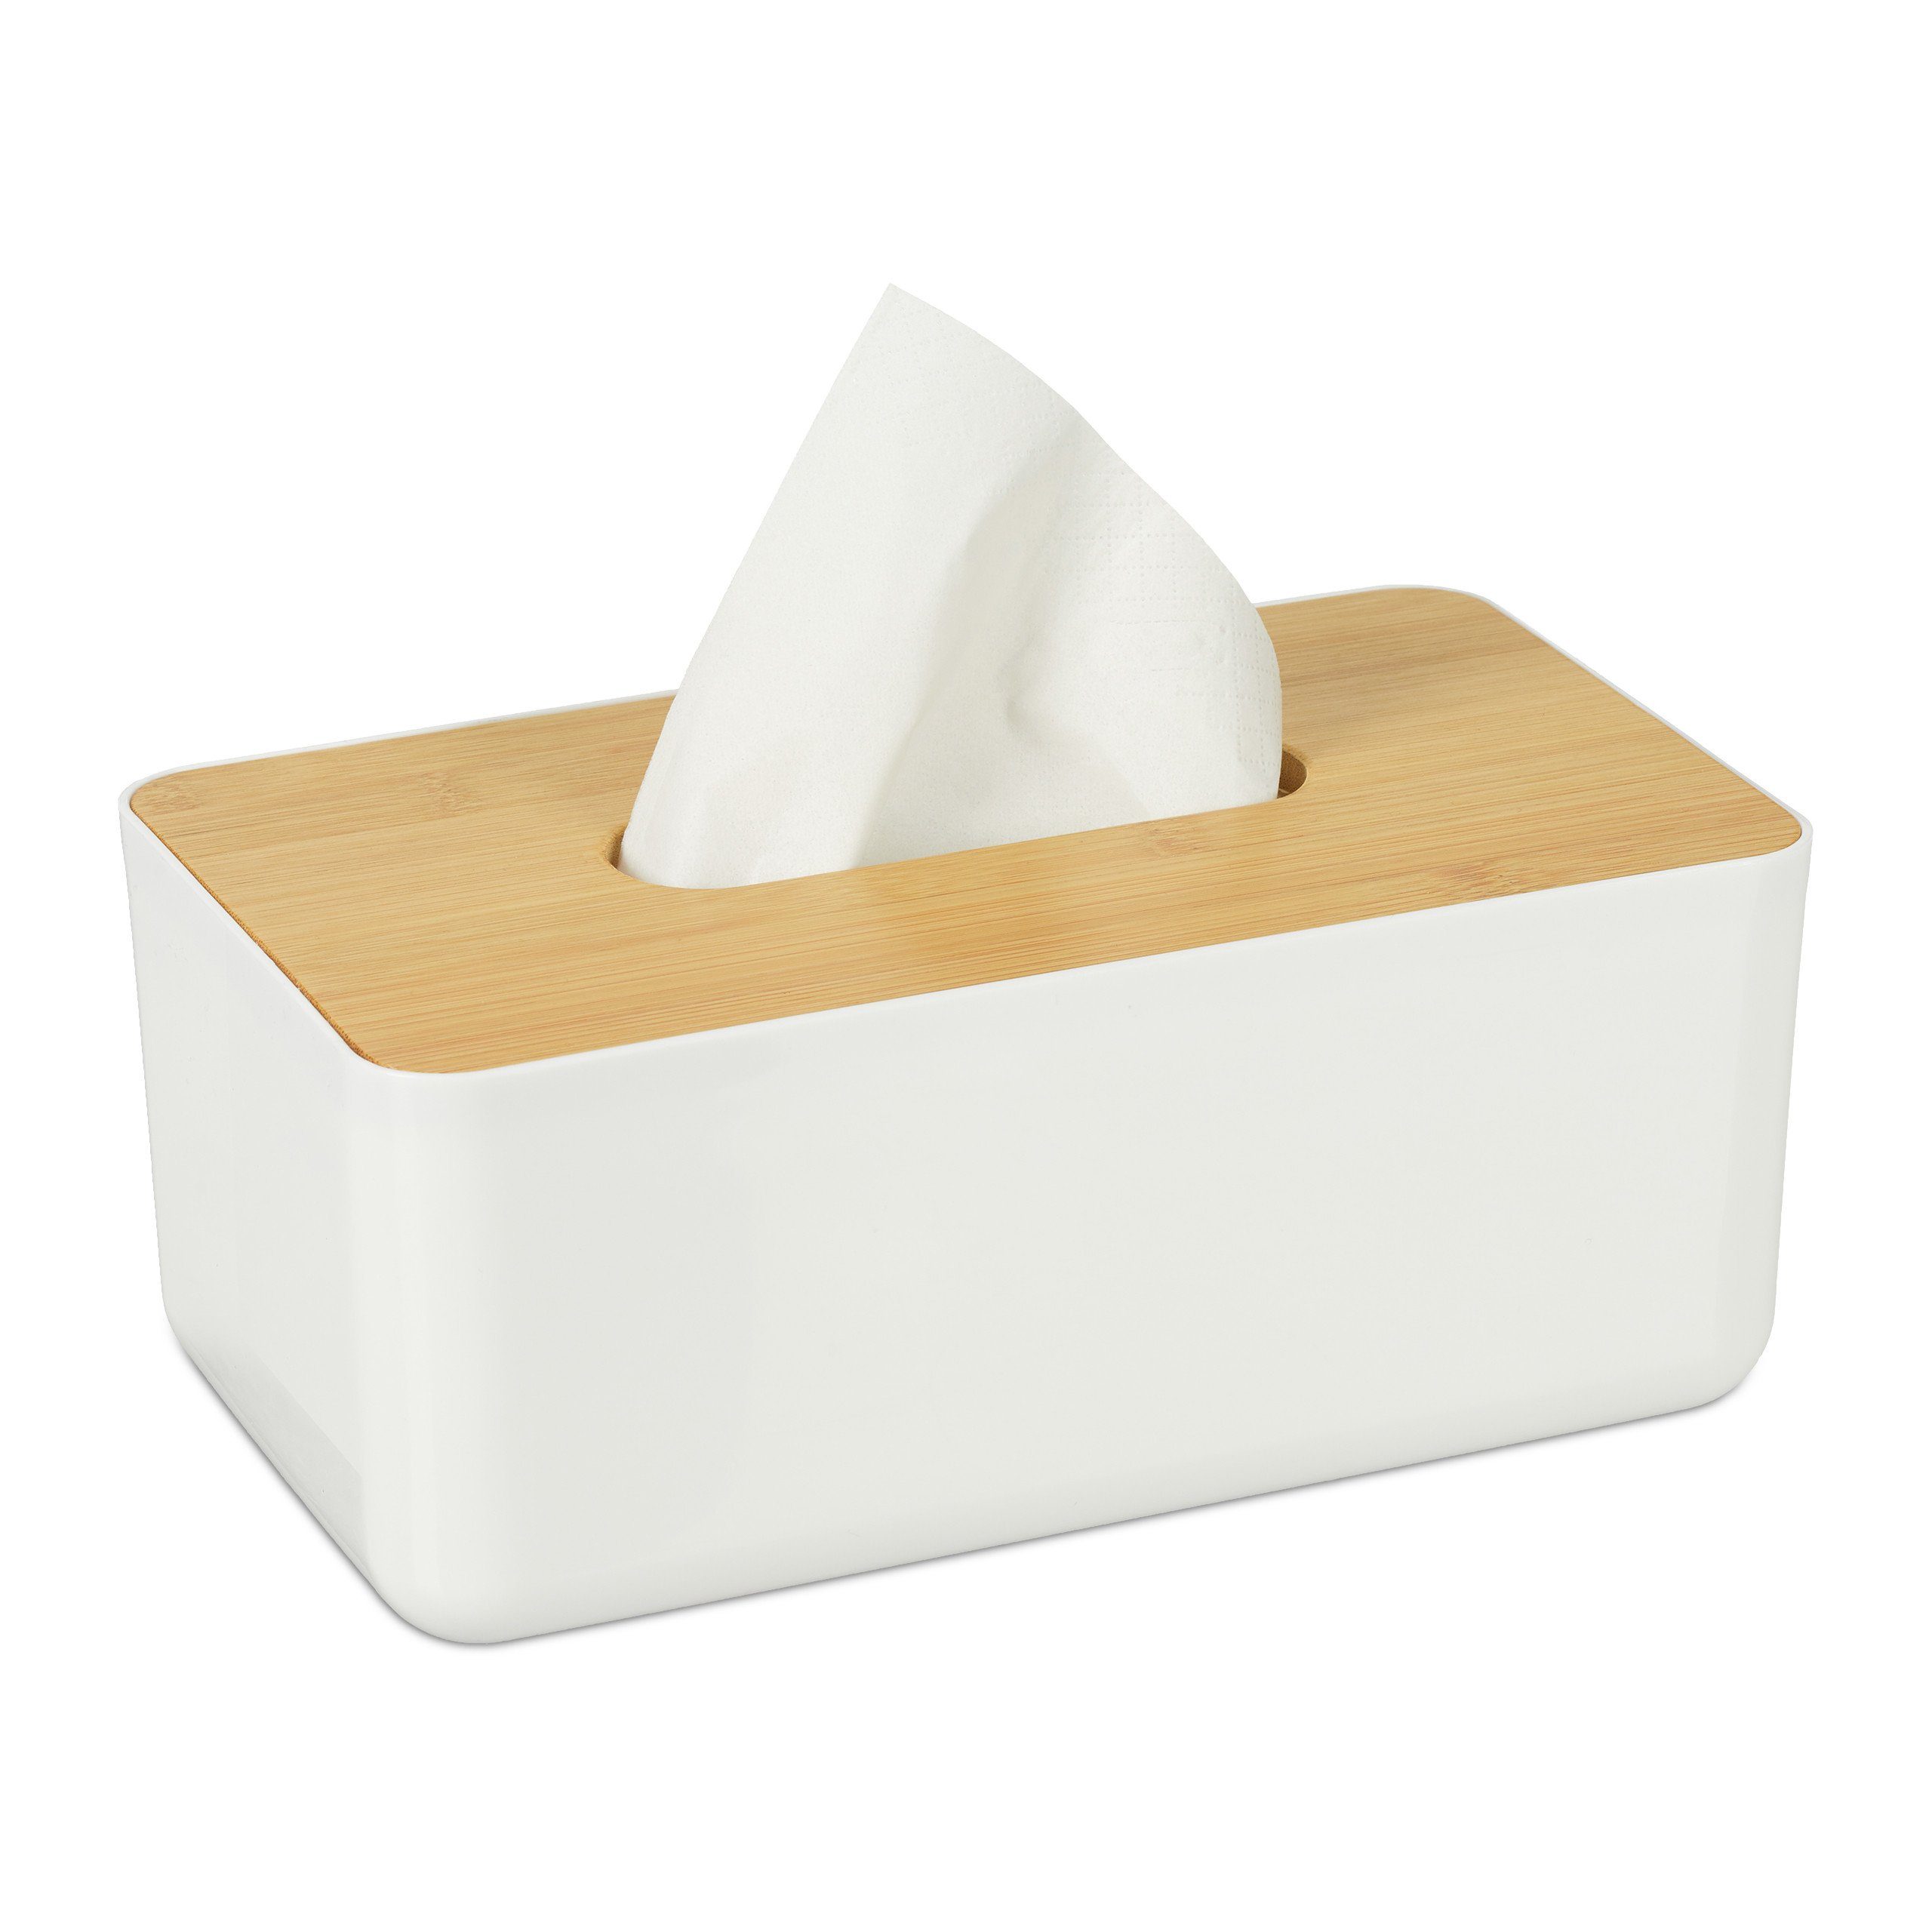 relaxdays Papiertuchbox Kosmetiktücher Box mit Holz-Deckel, Weiß